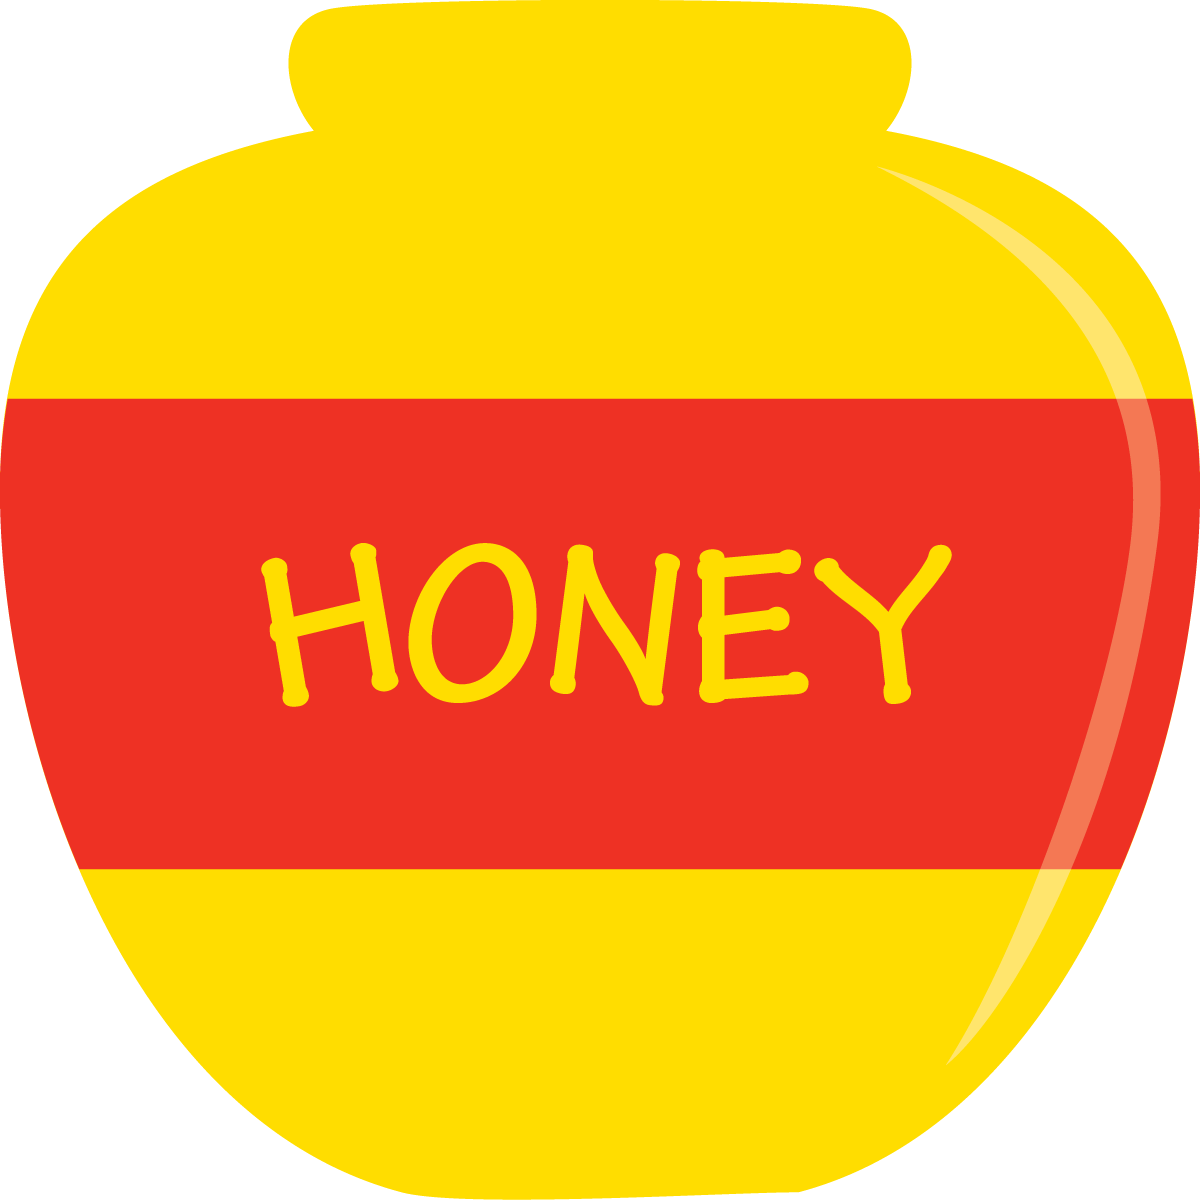 Honeypot Computer Icons Symbol Clip Art - Circle (1200x1200)